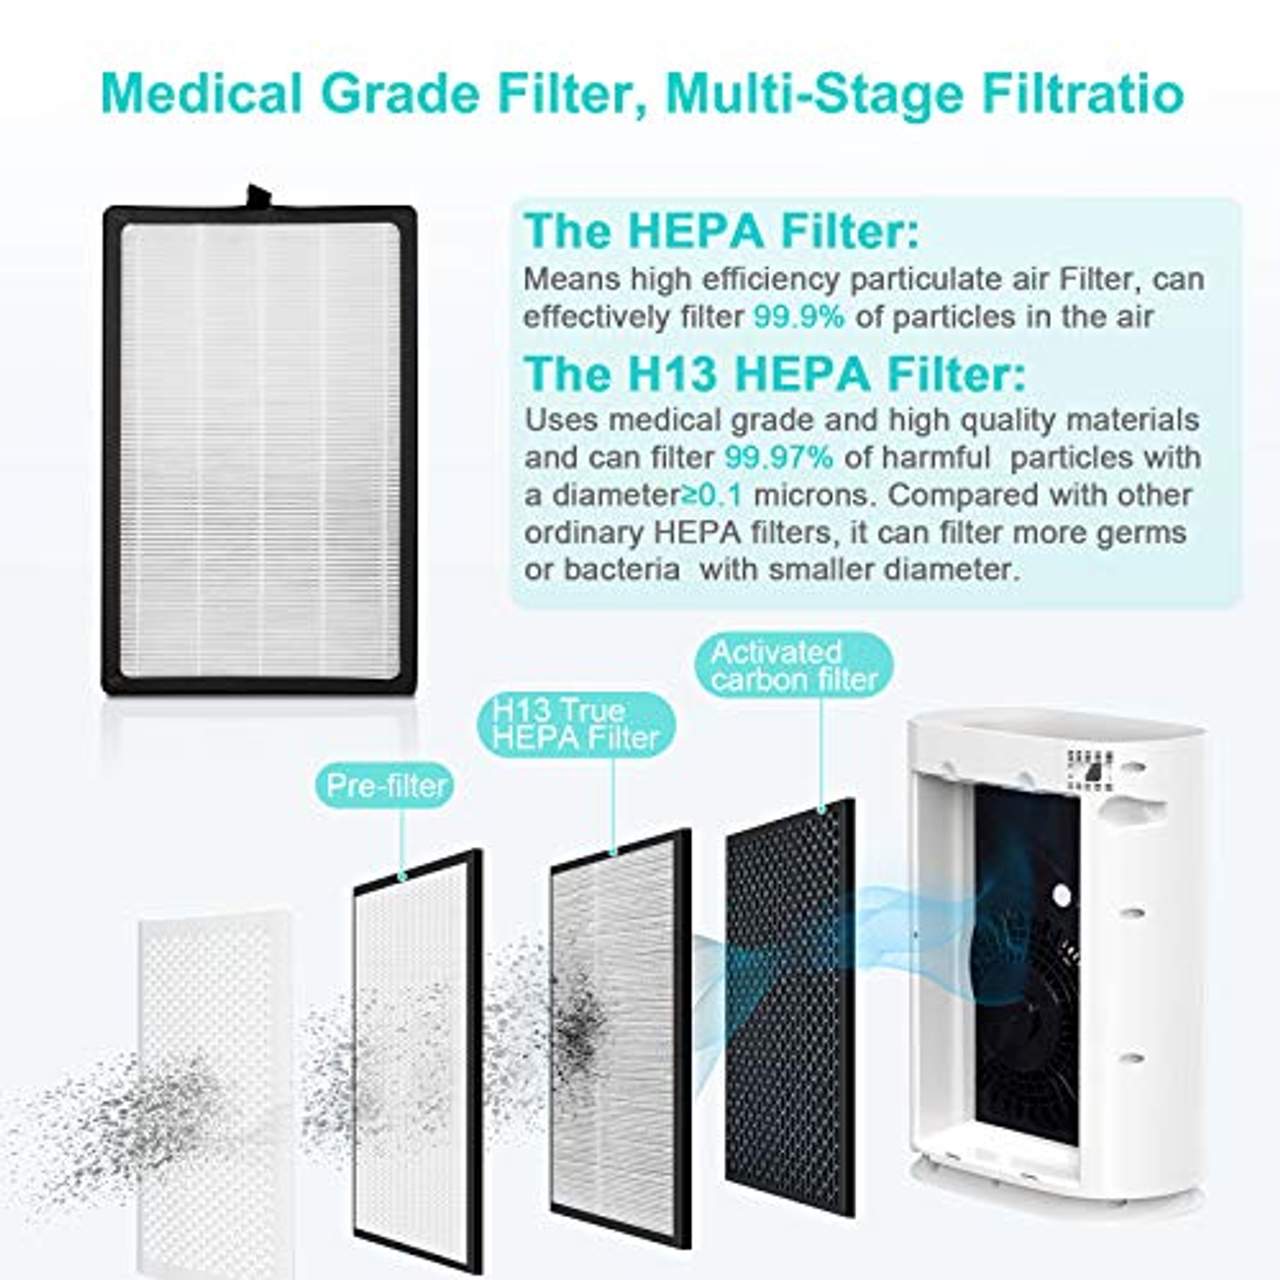 HIMOX Luftreiniger mit H13 Hepa Filter